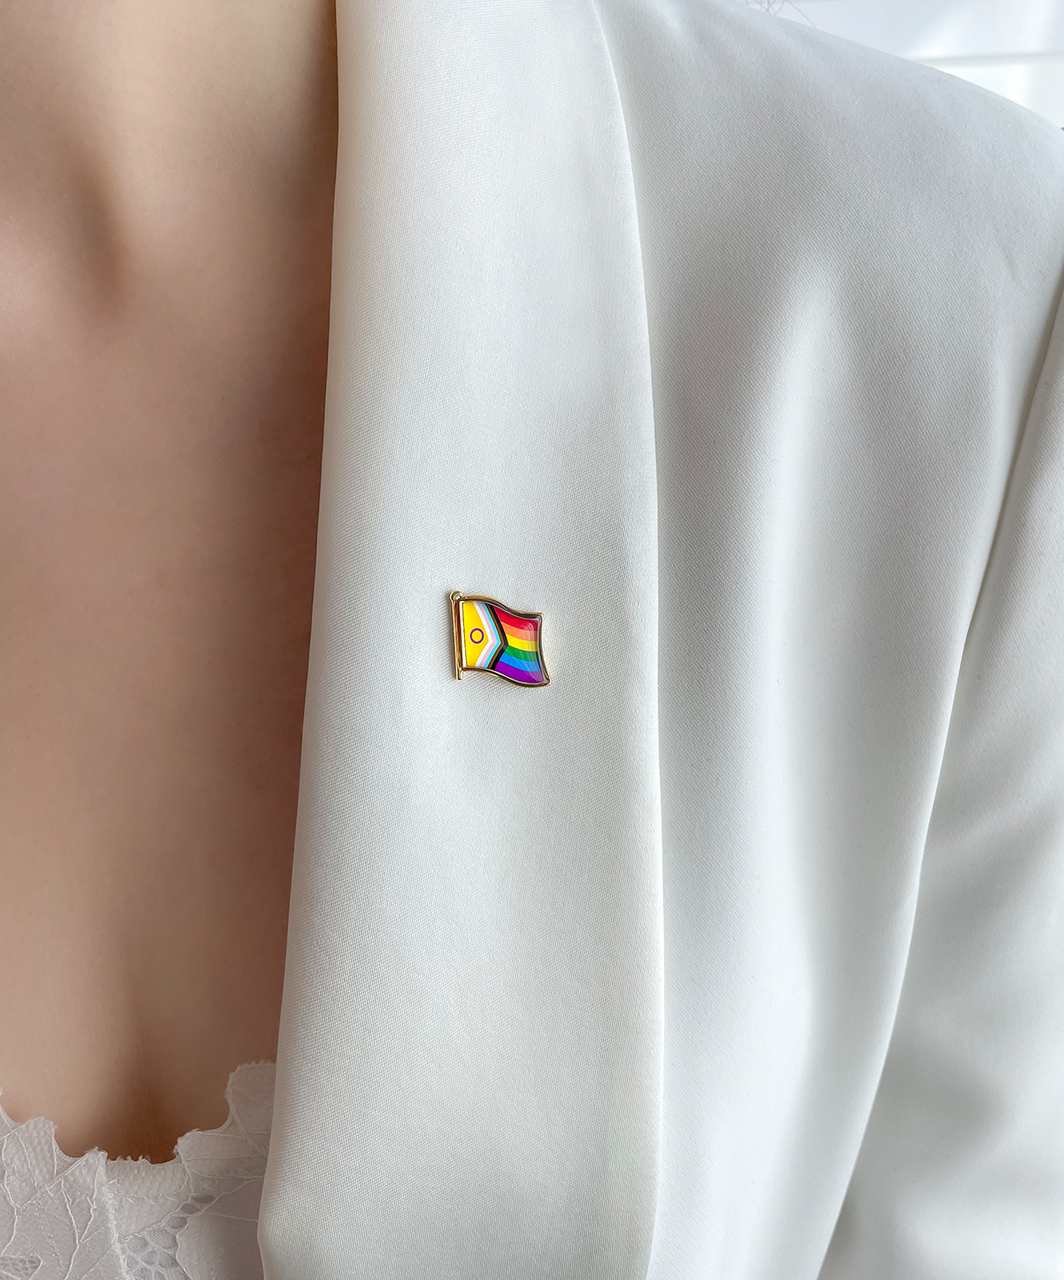 Rainbow Pride петличный значок прогрессивного флага ЛГБТ